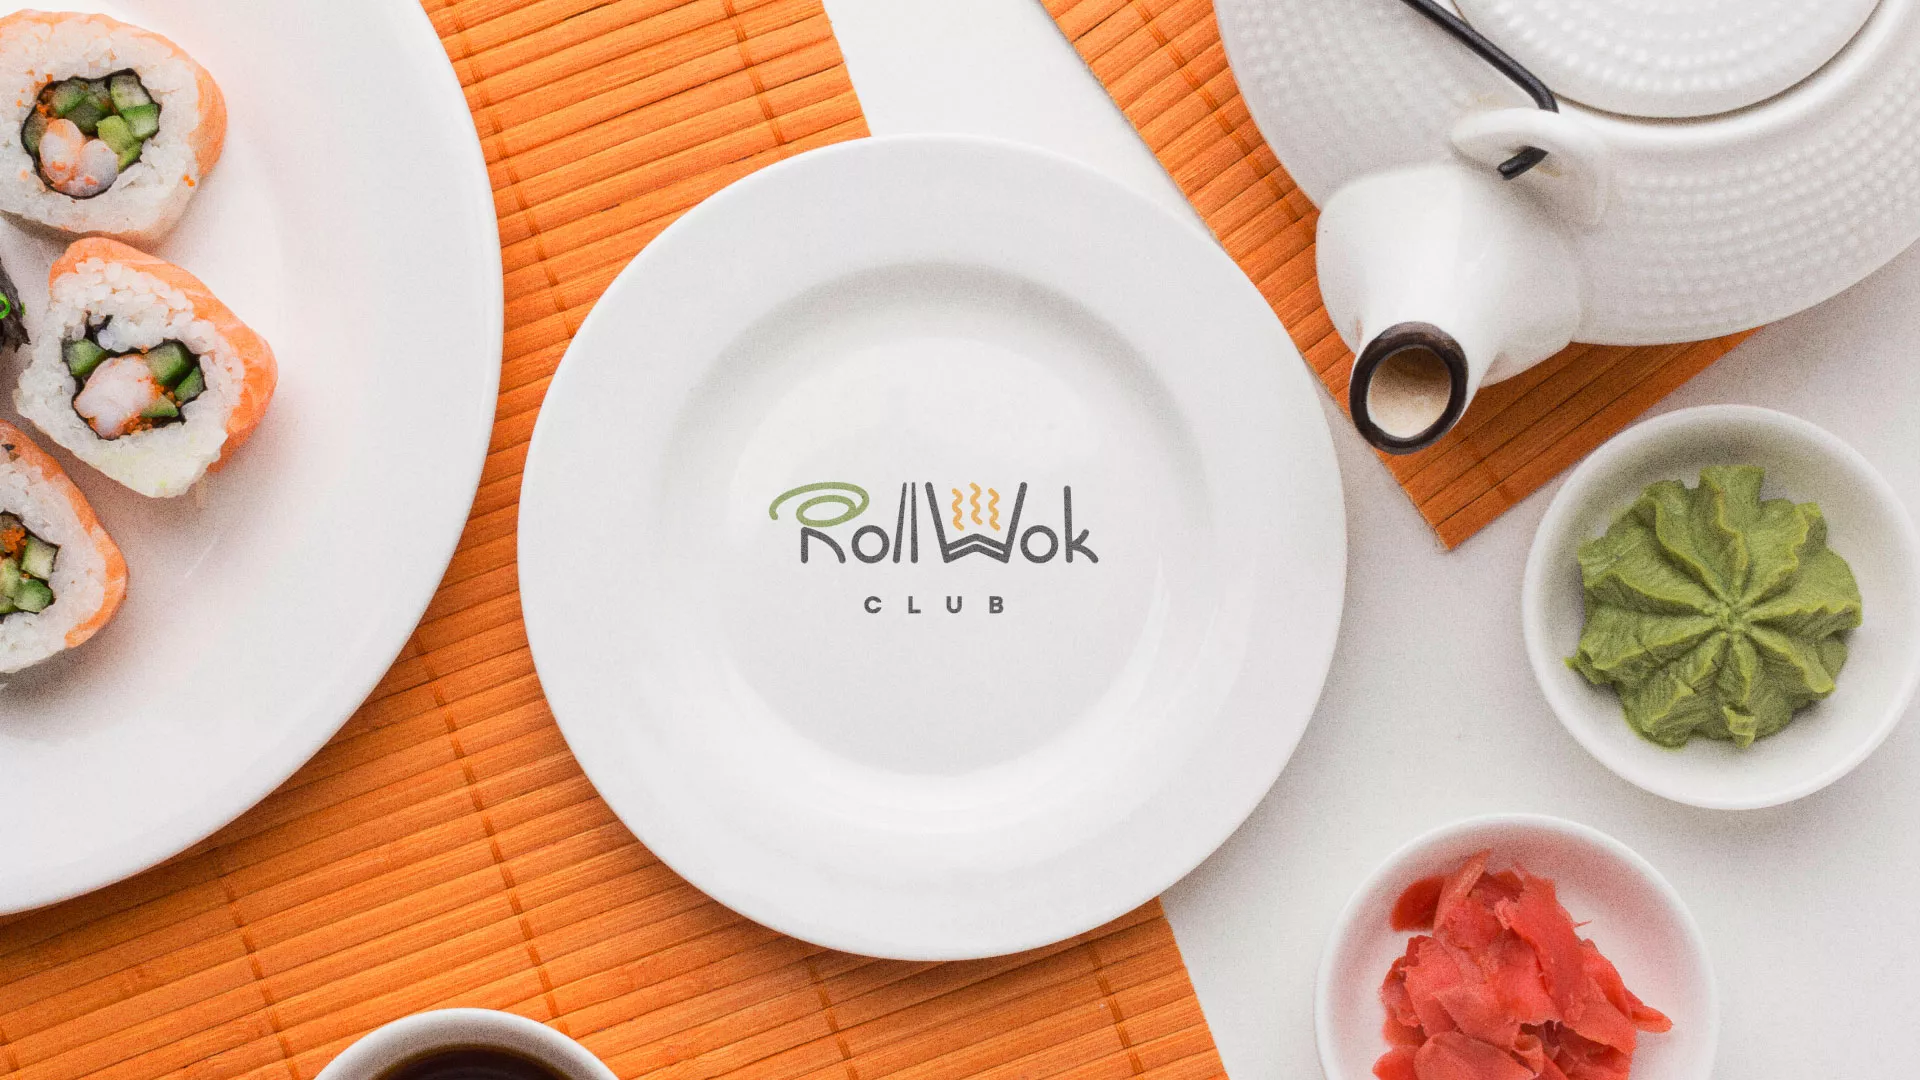 Разработка логотипа и фирменного стиля суши-бара «Roll Wok Club» в Грозном